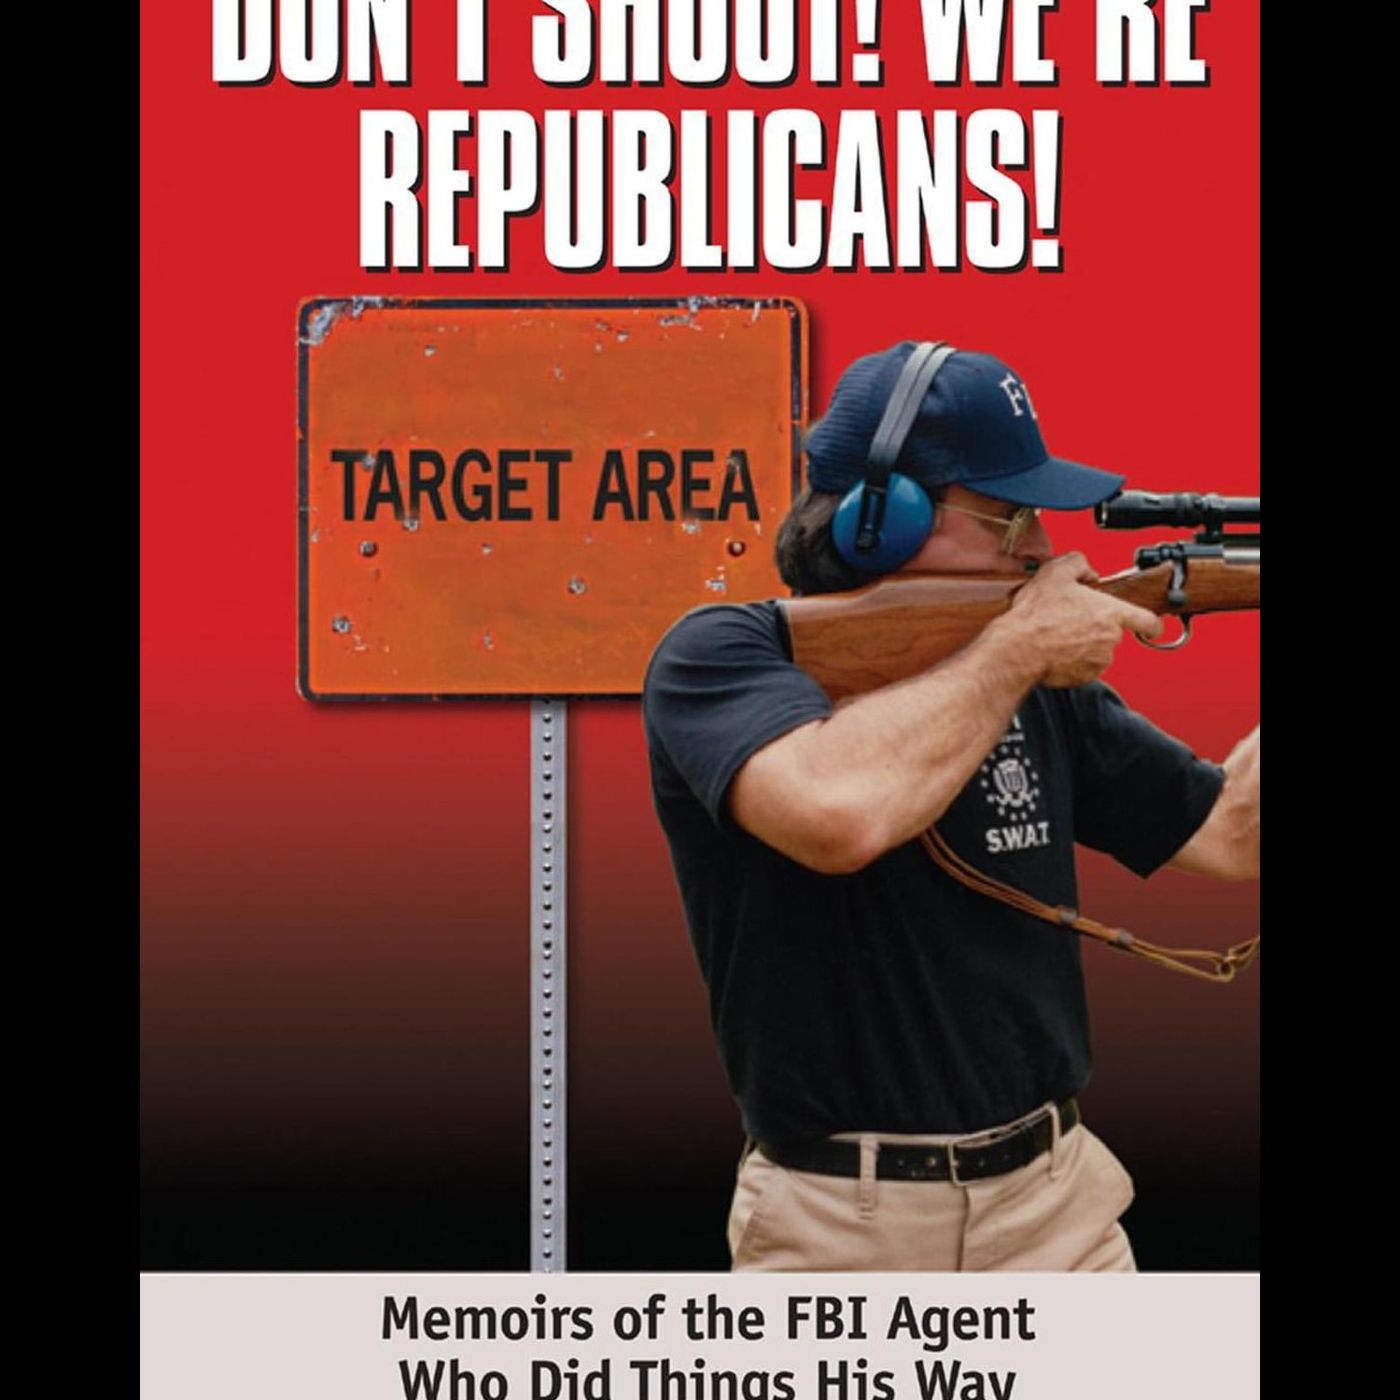 Joel Michalec Show 167: Don't Shoot! We're Republicans!